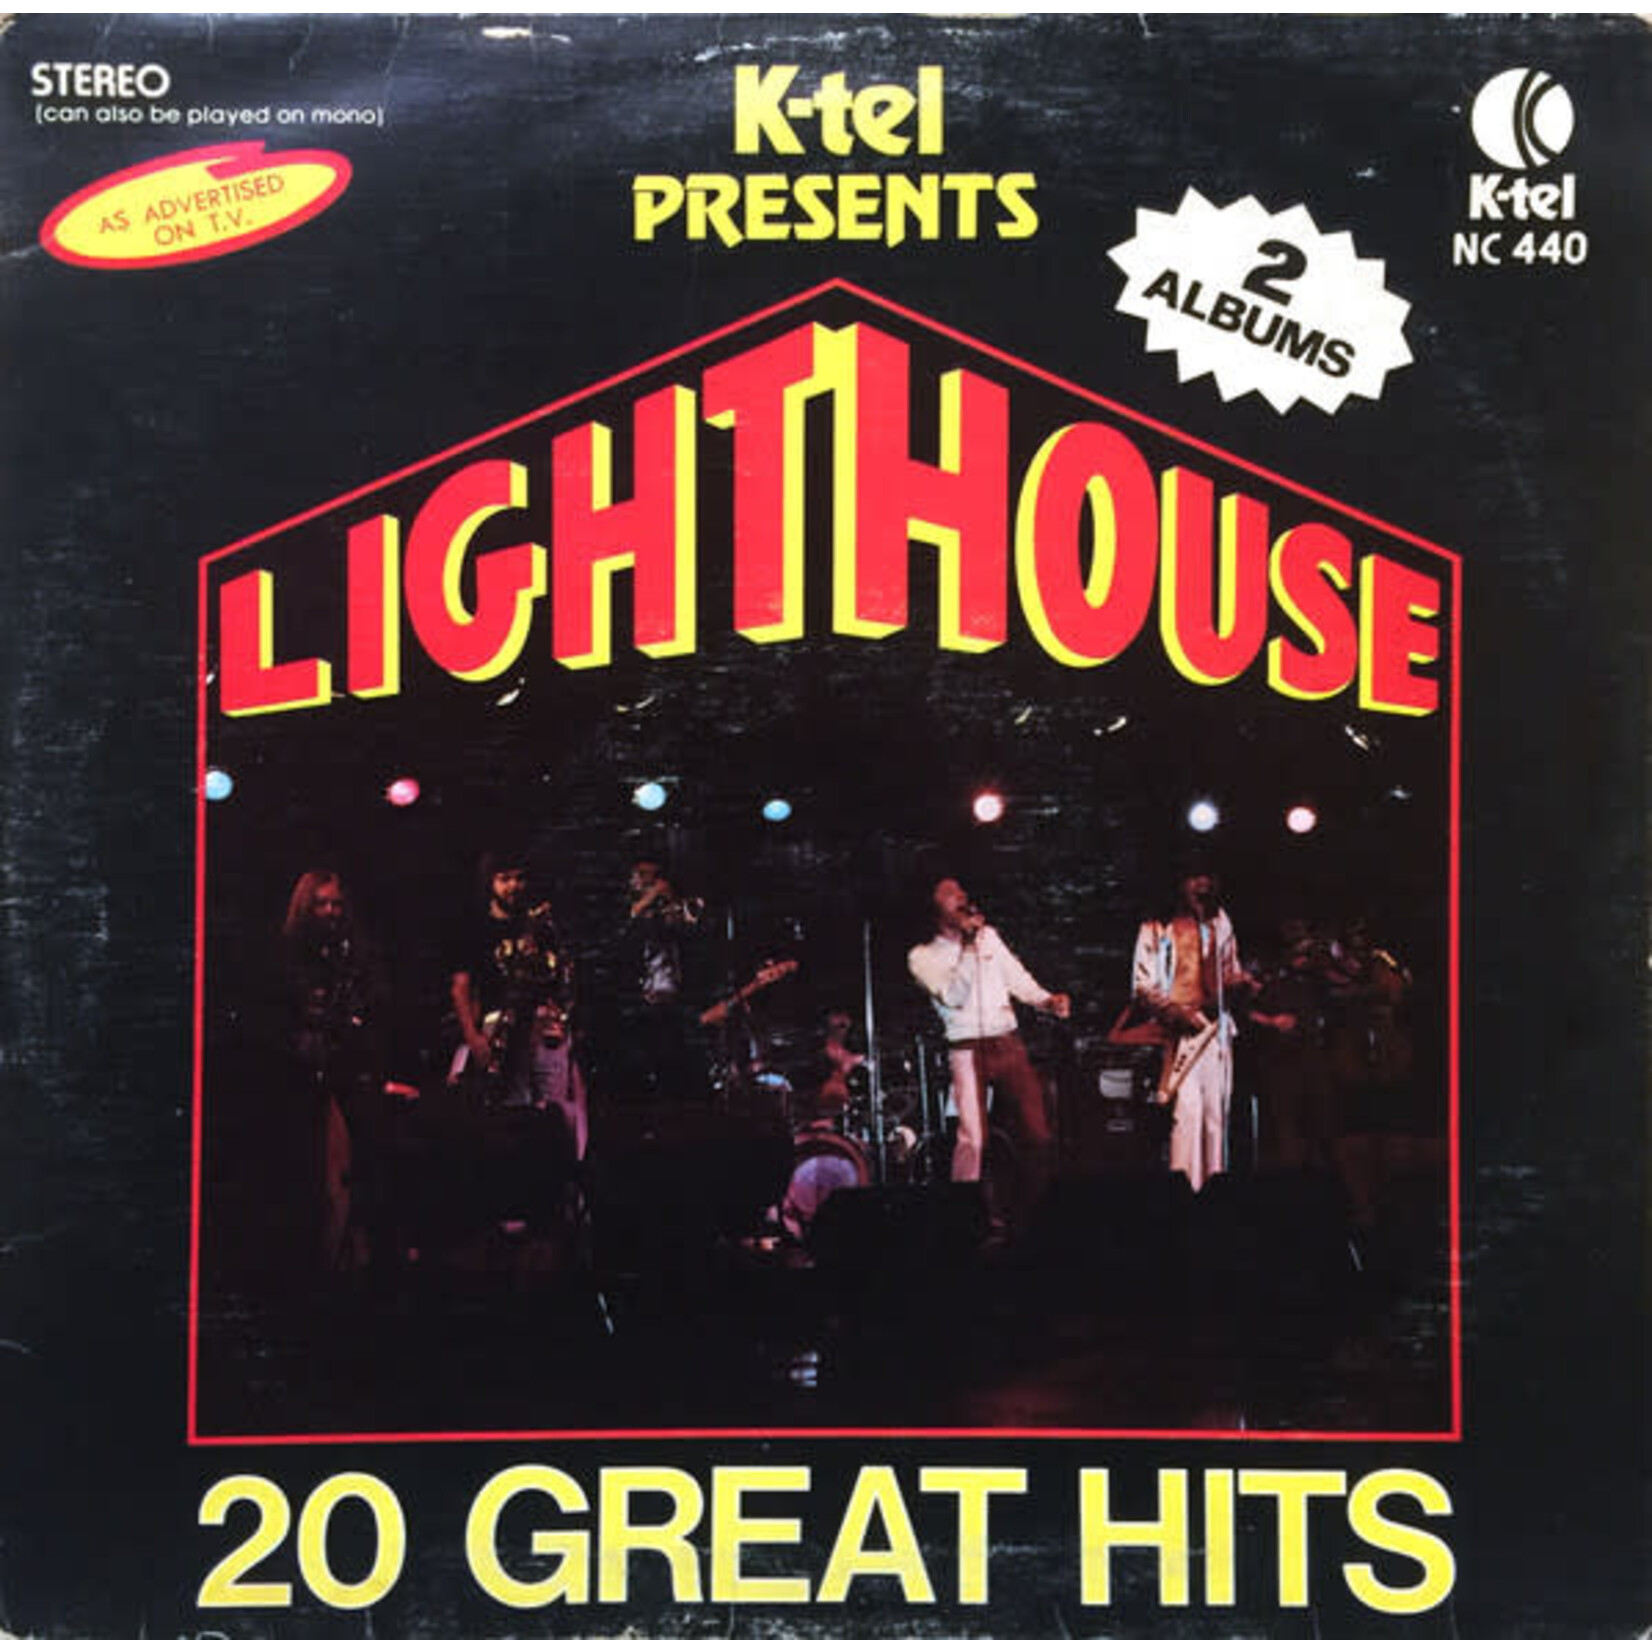 [Vintage] Lighthouse: 20 Great Hits (2LP, Ktel) [VINTAGE]